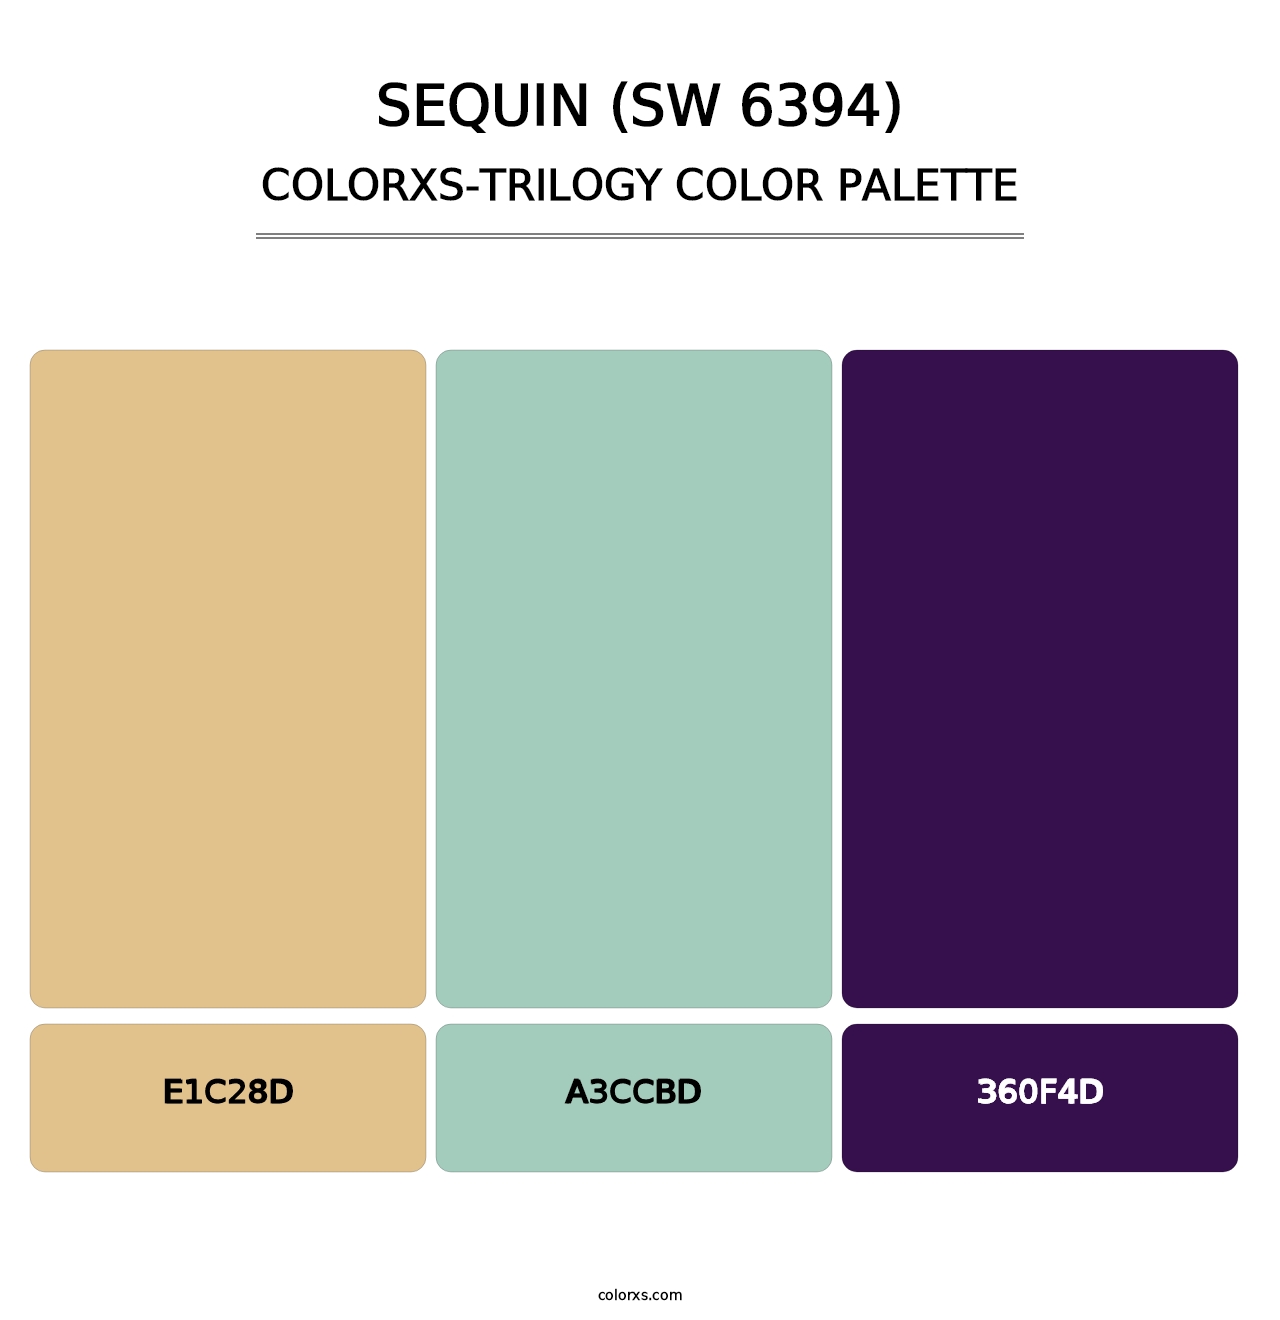 Sequin (SW 6394) - Colorxs Trilogy Palette